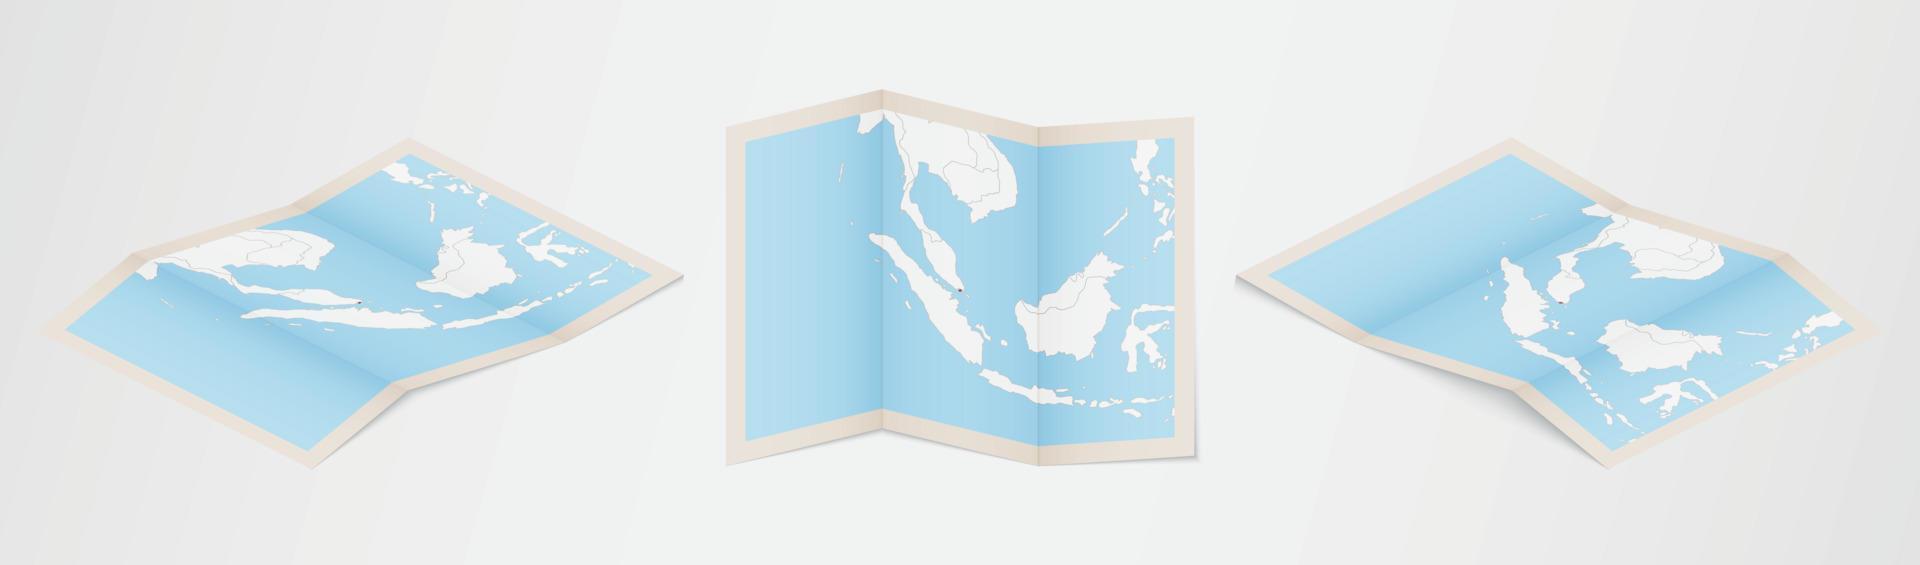 gevouwen kaart van Singapore in drie verschillend versies. vector